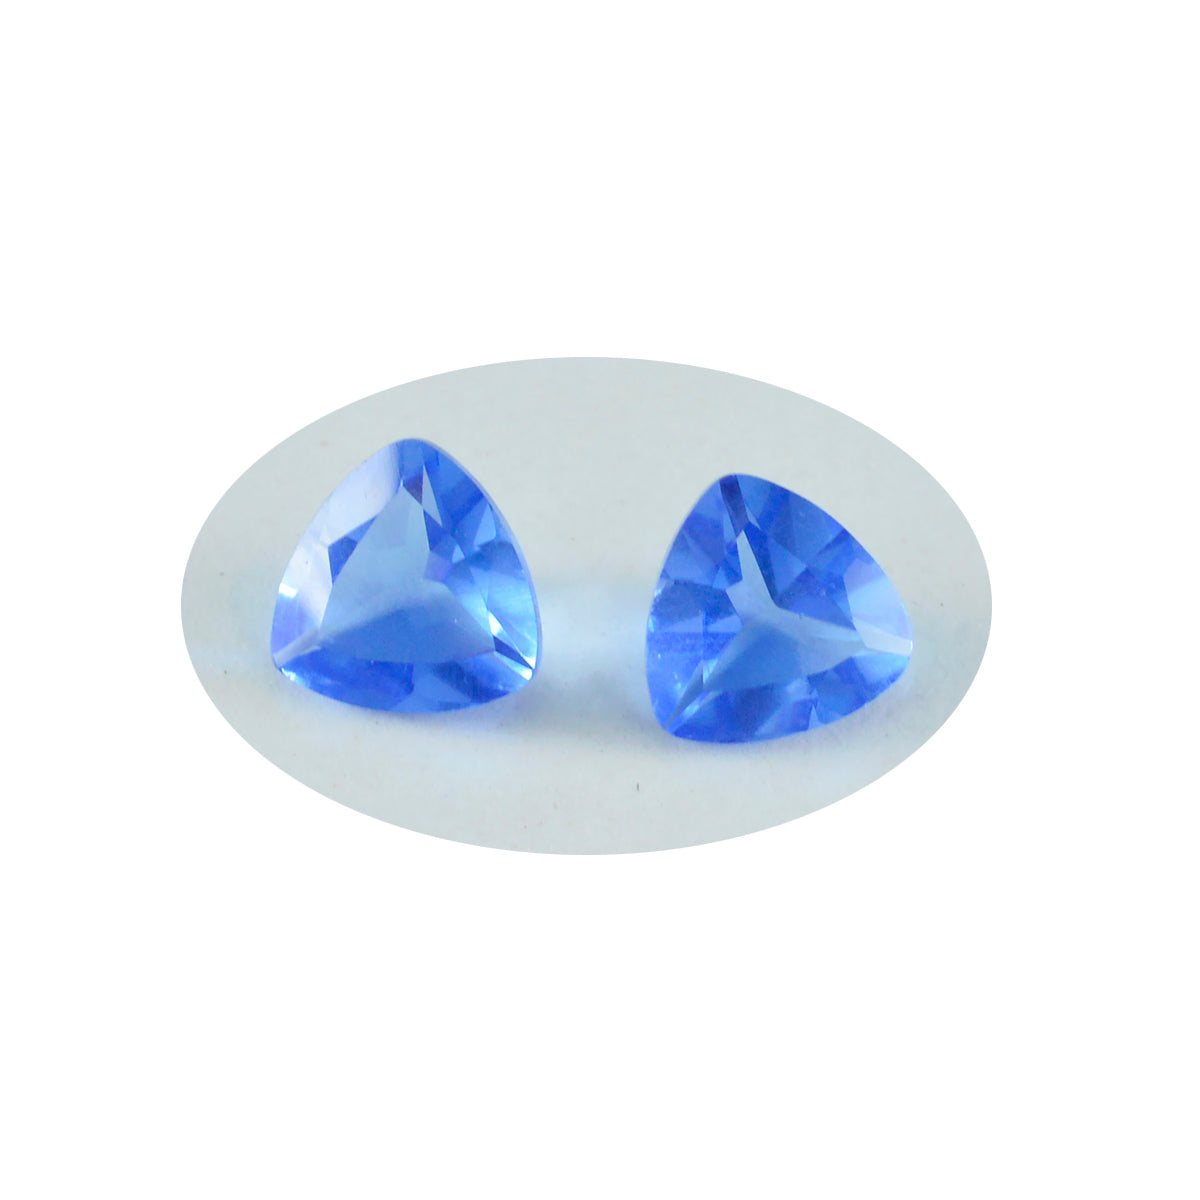 Riyogems 1PC Blue Sapphire CZ Faceted 13x13 mm Trillion Shape amazing Quality Loose Gem